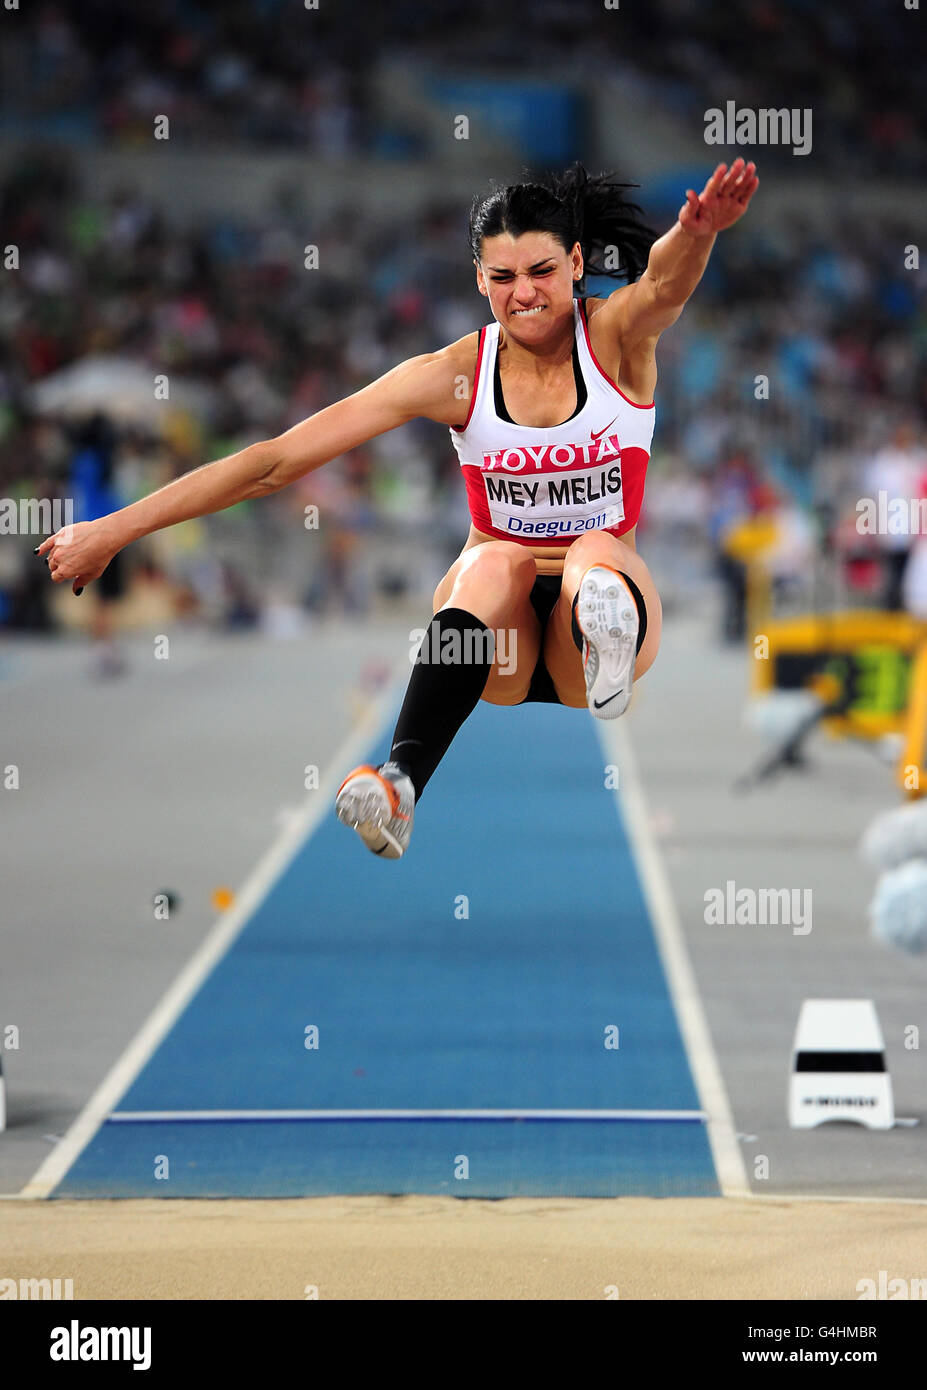 Atletica - Campionati del mondo IAAF 2011 - Day Two - Daegu. Il turco Karin Mey Melis compete nel salto lungo Foto Stock